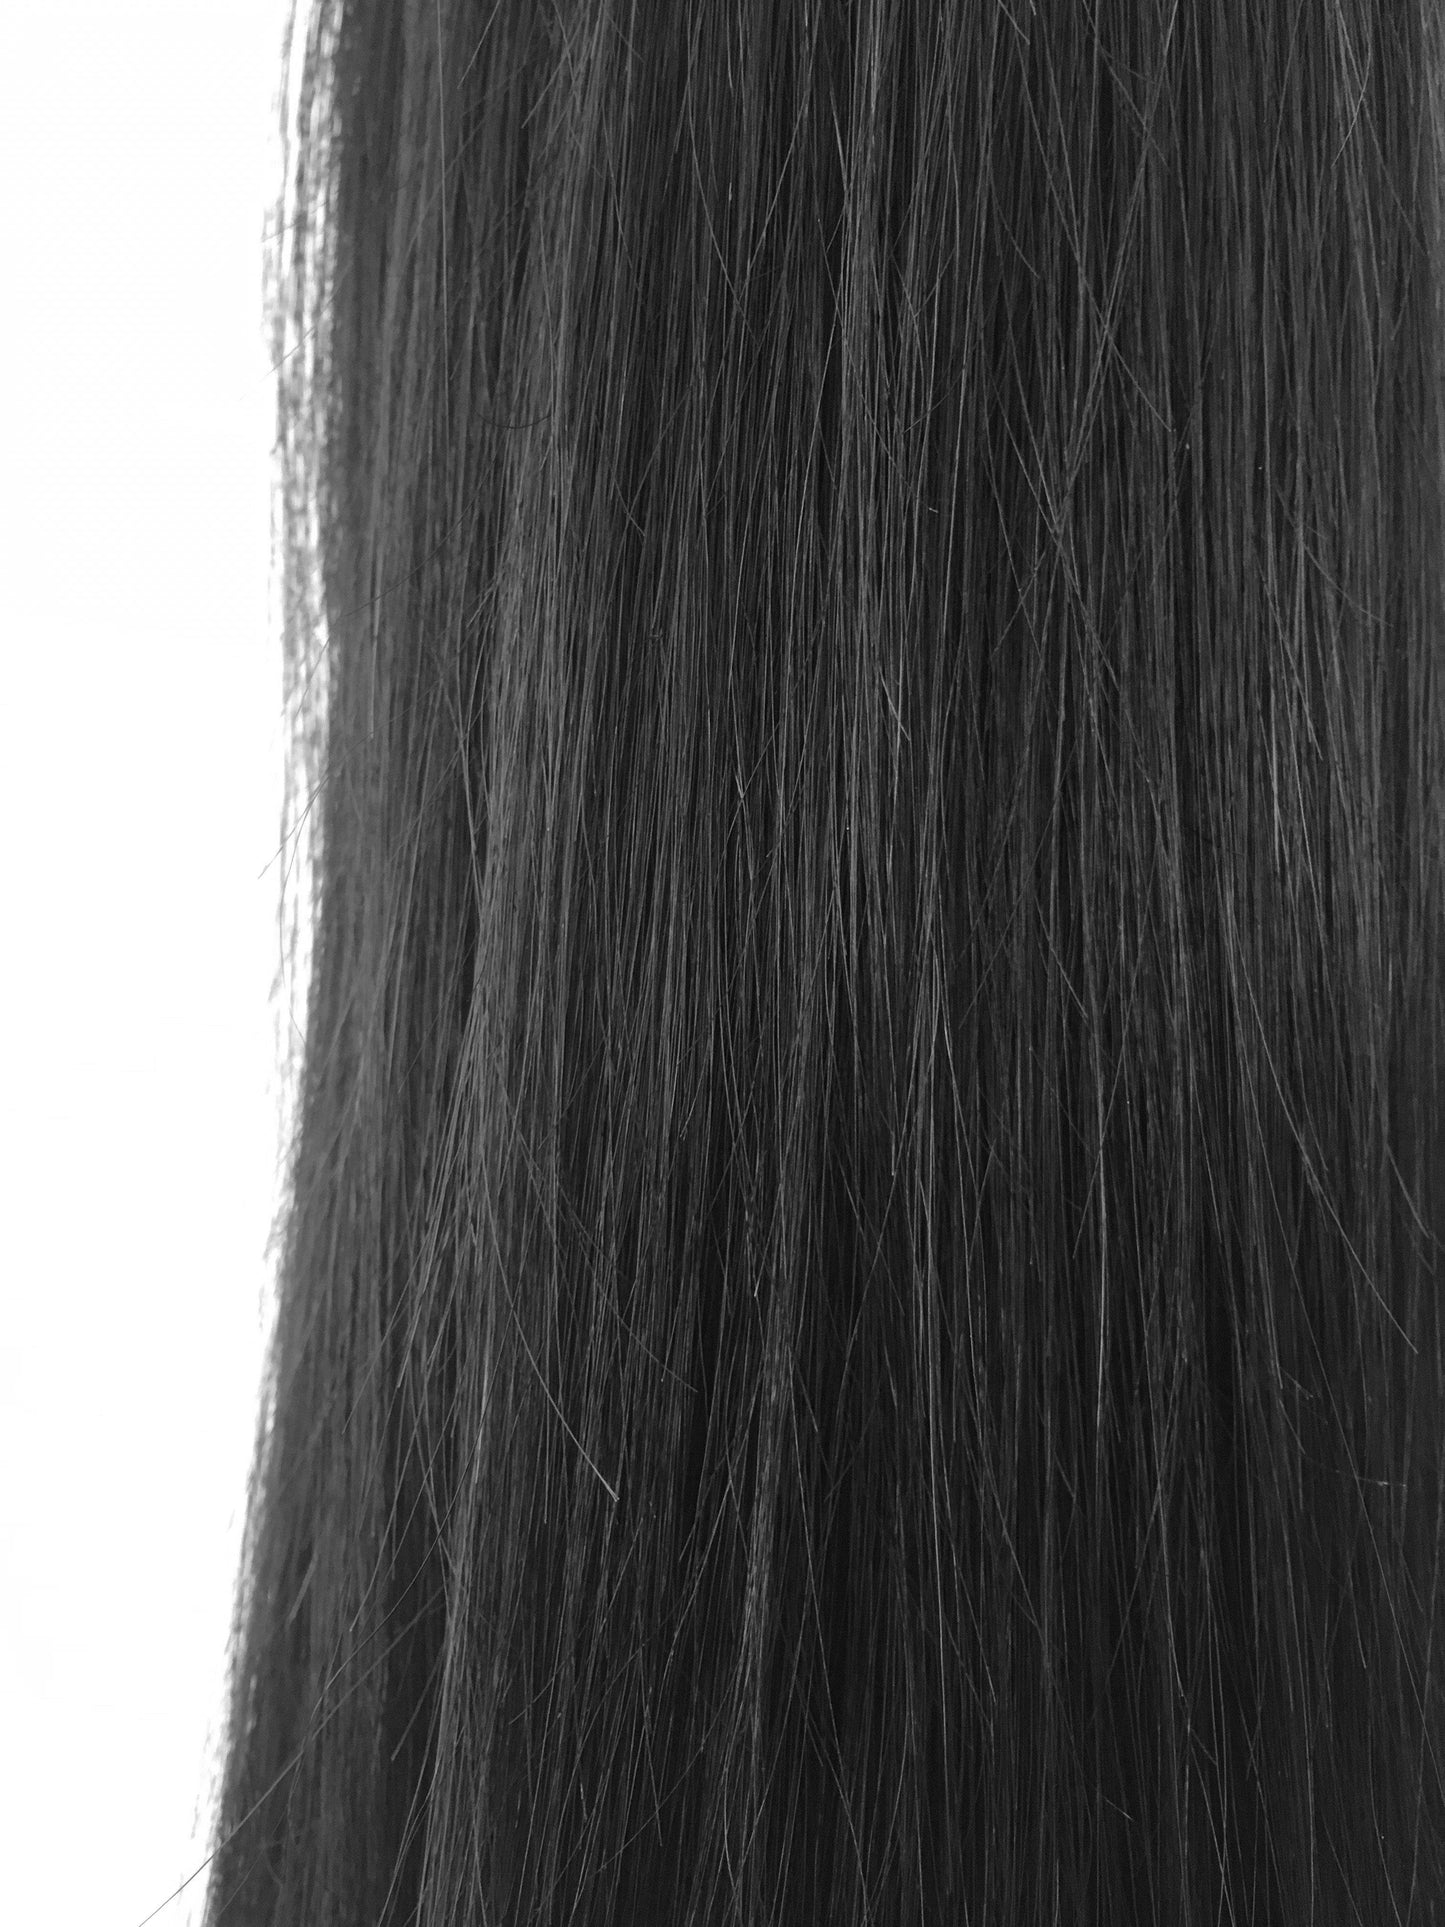 שיער אנושי בתולה ברזילאי, תוספות טבעות ננו, חלק, 24'', בתולה לא צבעוני. משלוח מהיר!-שיער ויופי בתולה, תוספות השיער הטובות ביותר, שיער אנושי בתול אמיתי.